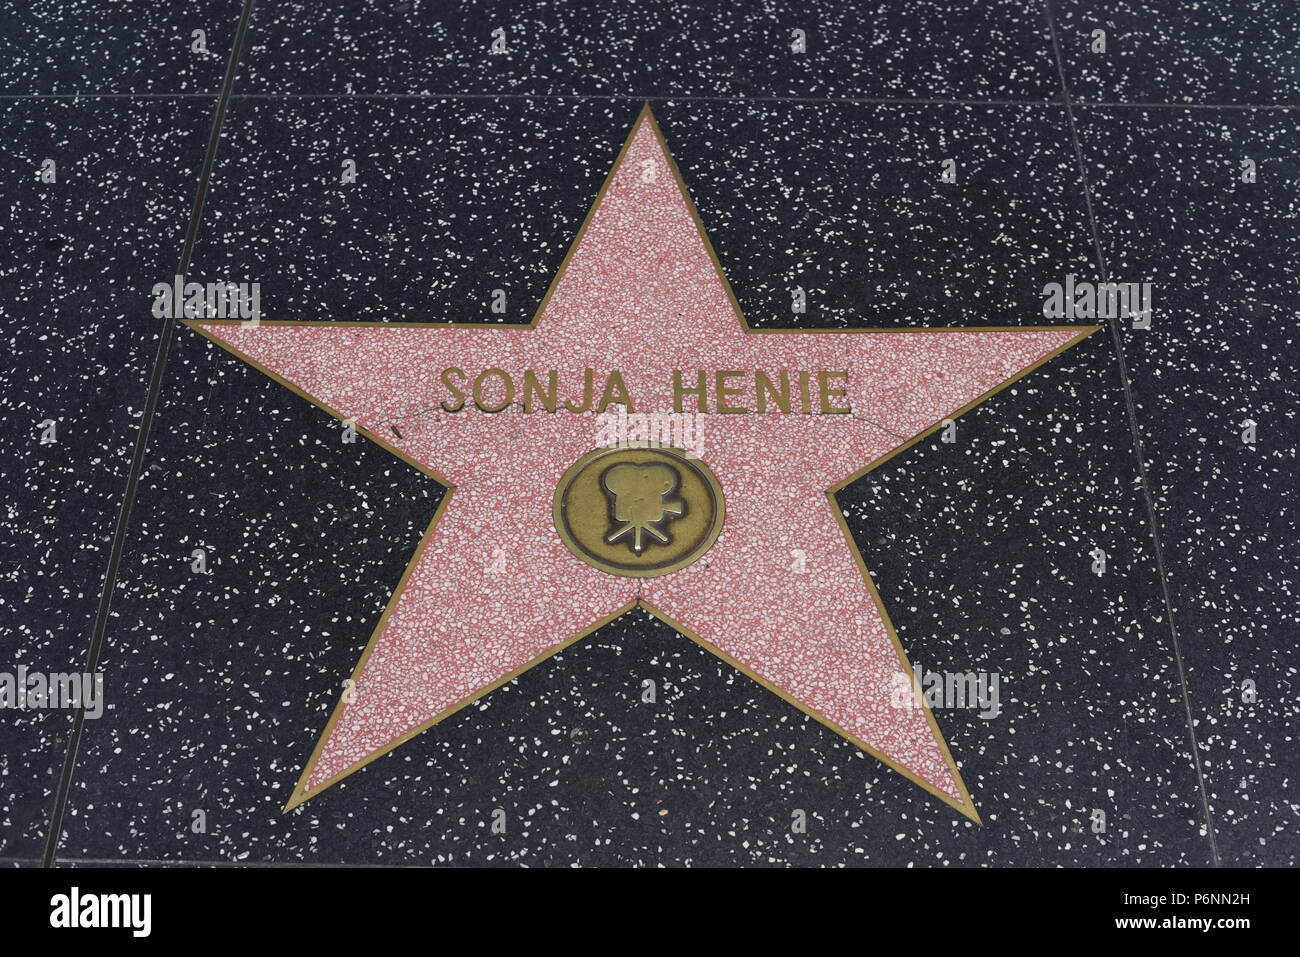 HOLLYWOOD, CA - 29 Giugno: Sonja Henie stella sulla Hollywood Walk of Fame in Hollywood, la California il 29 giugno 2018. Foto Stock